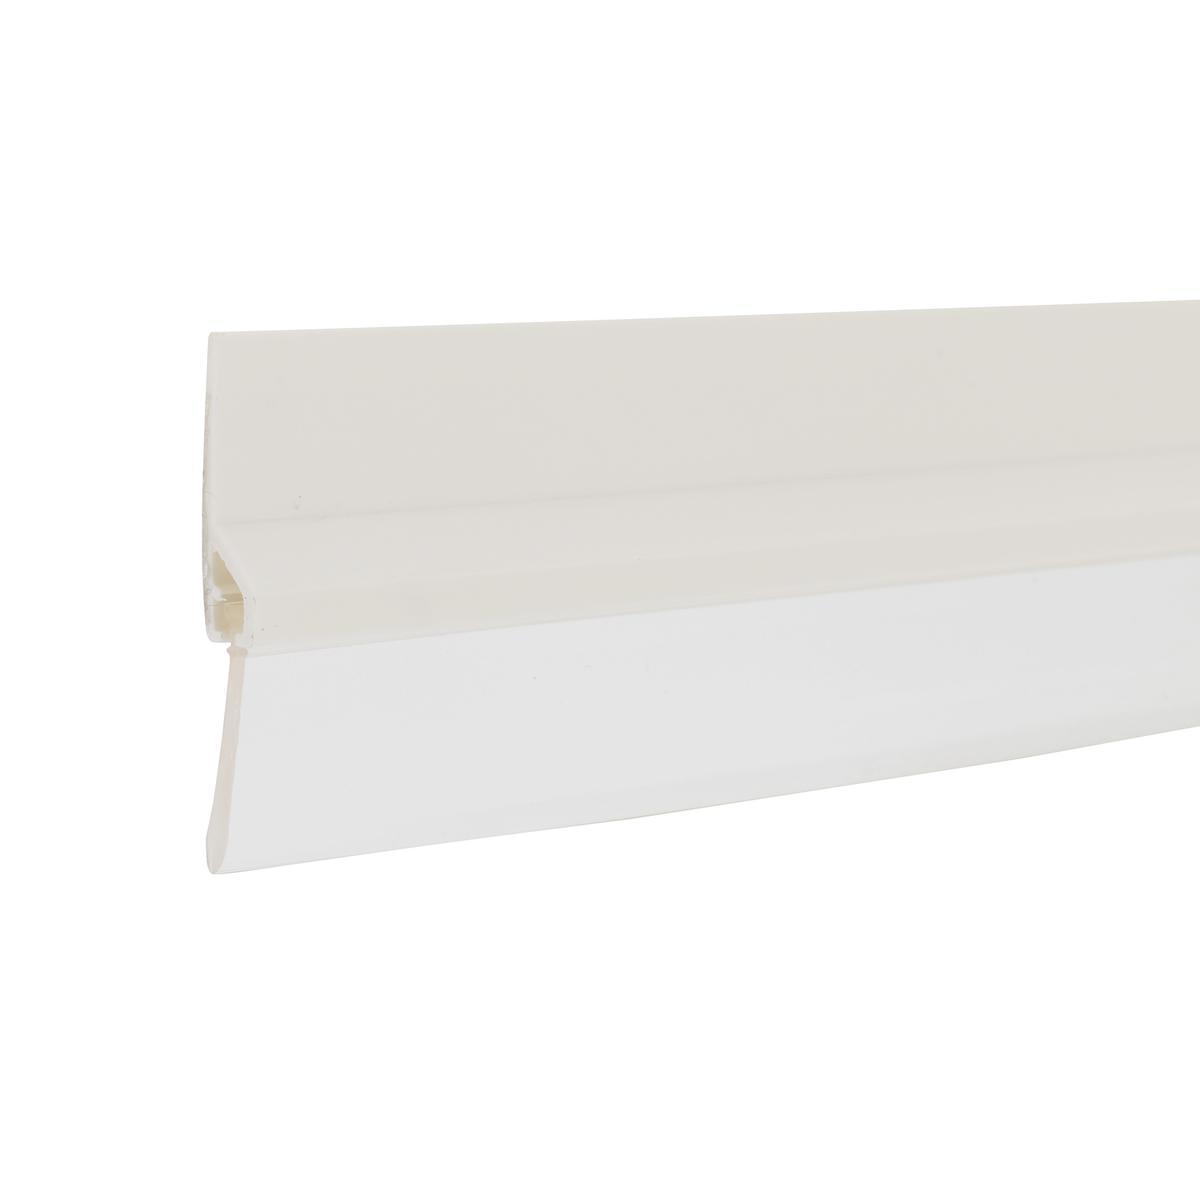 Bas de Porte + PVC - 99 x 0.6 x 2.5 cm - Blanc